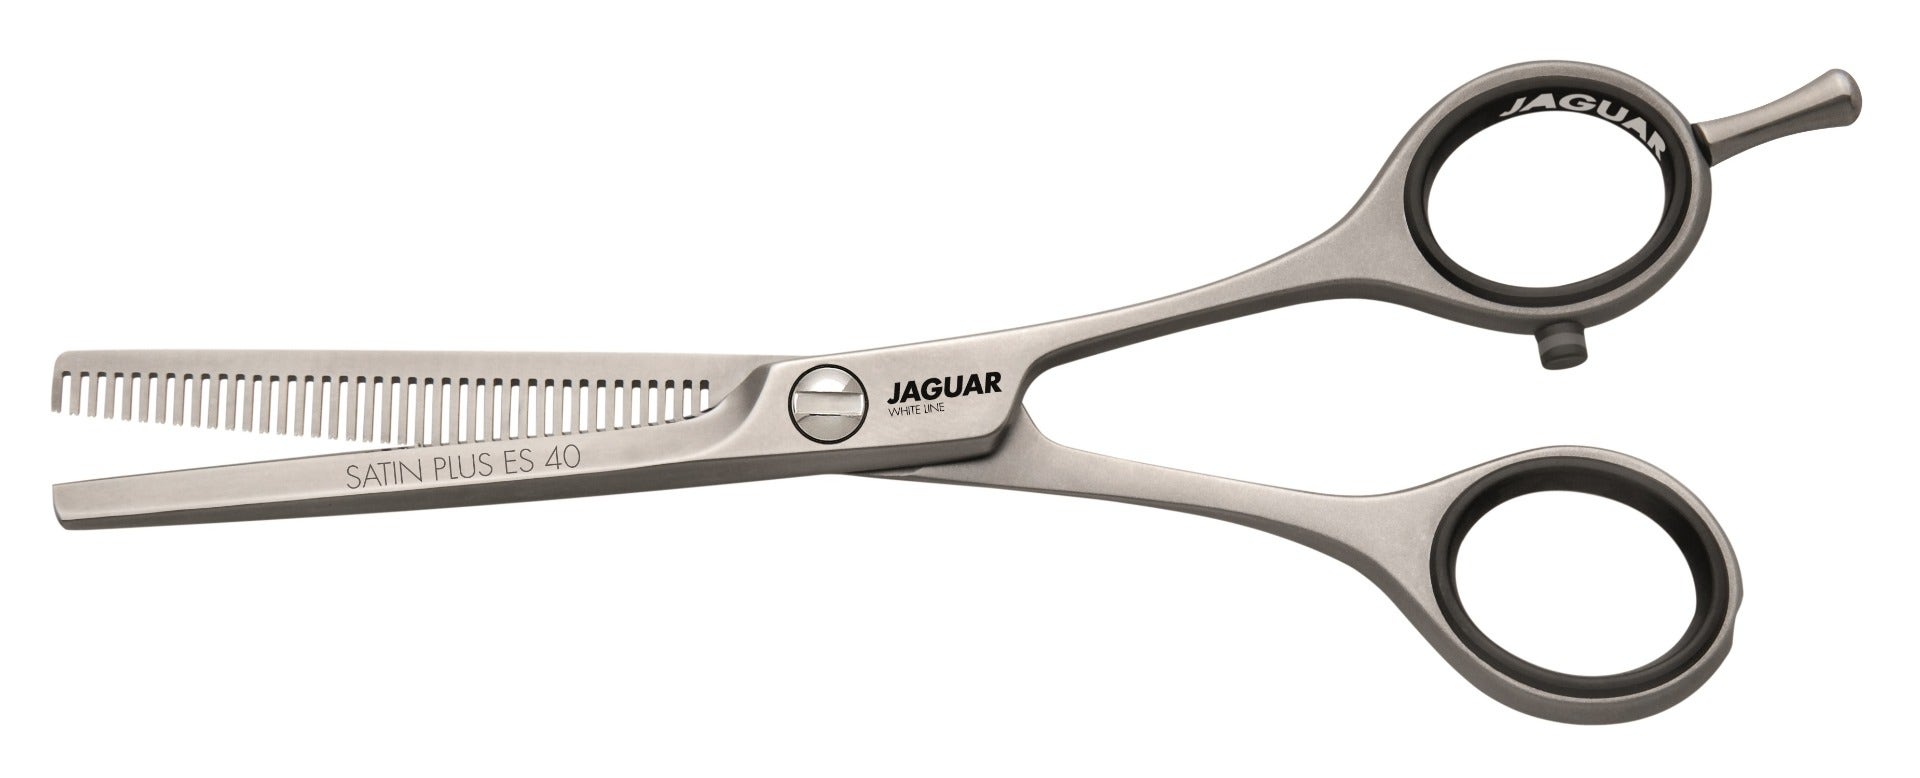 Jaguar White Line Satin Plus Es Thinning Scissors